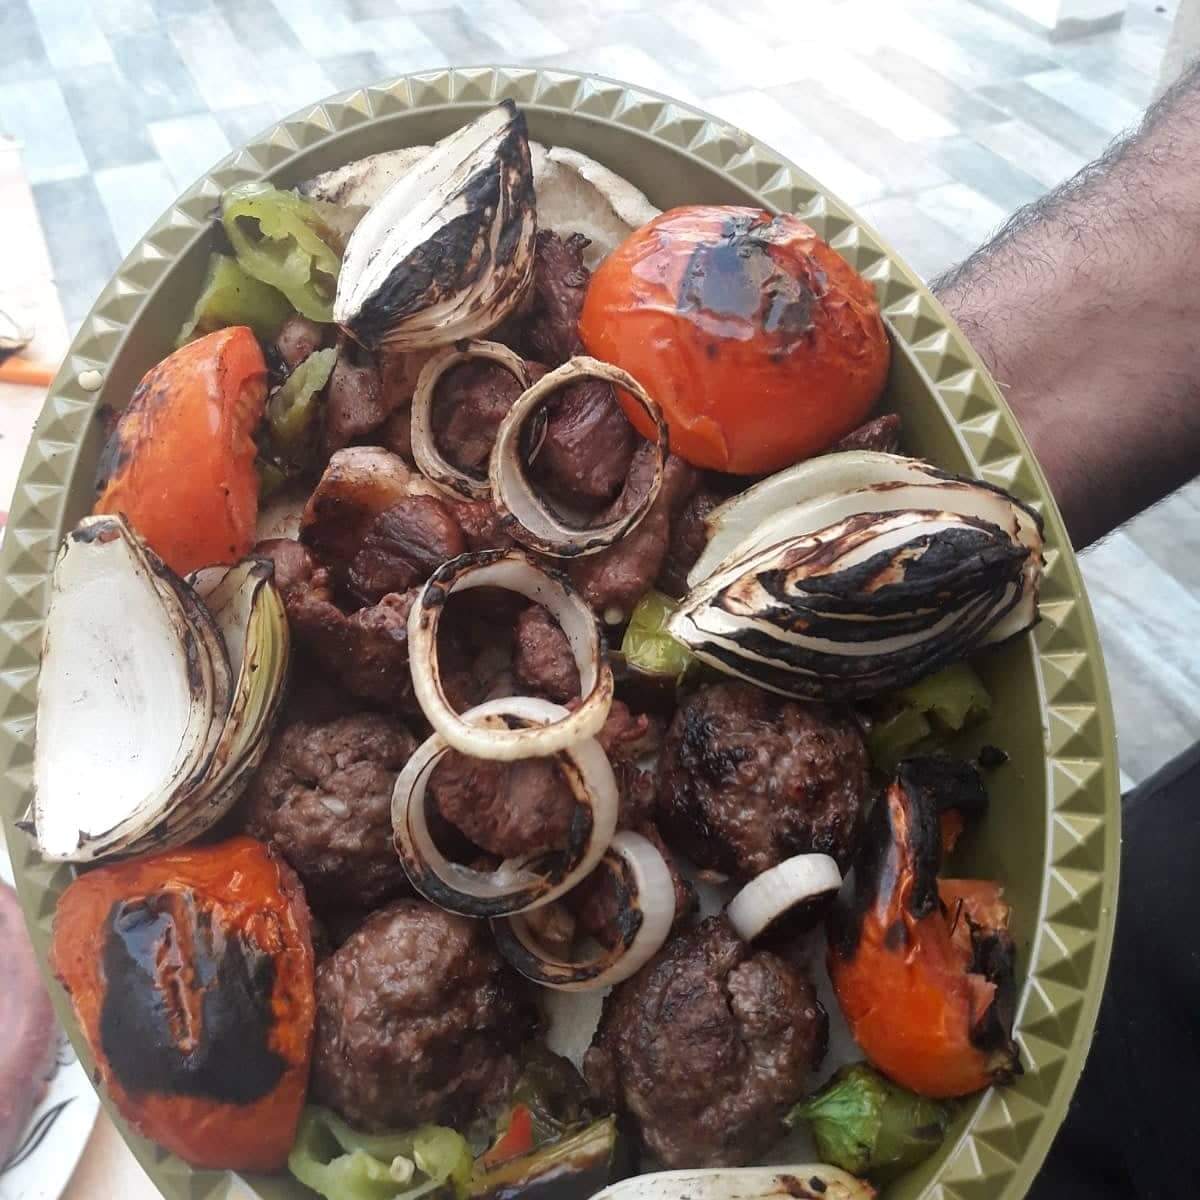  جديد في يافا - مطعم ومشاوي أبو خليل في شارع باحد يتسحاق 3